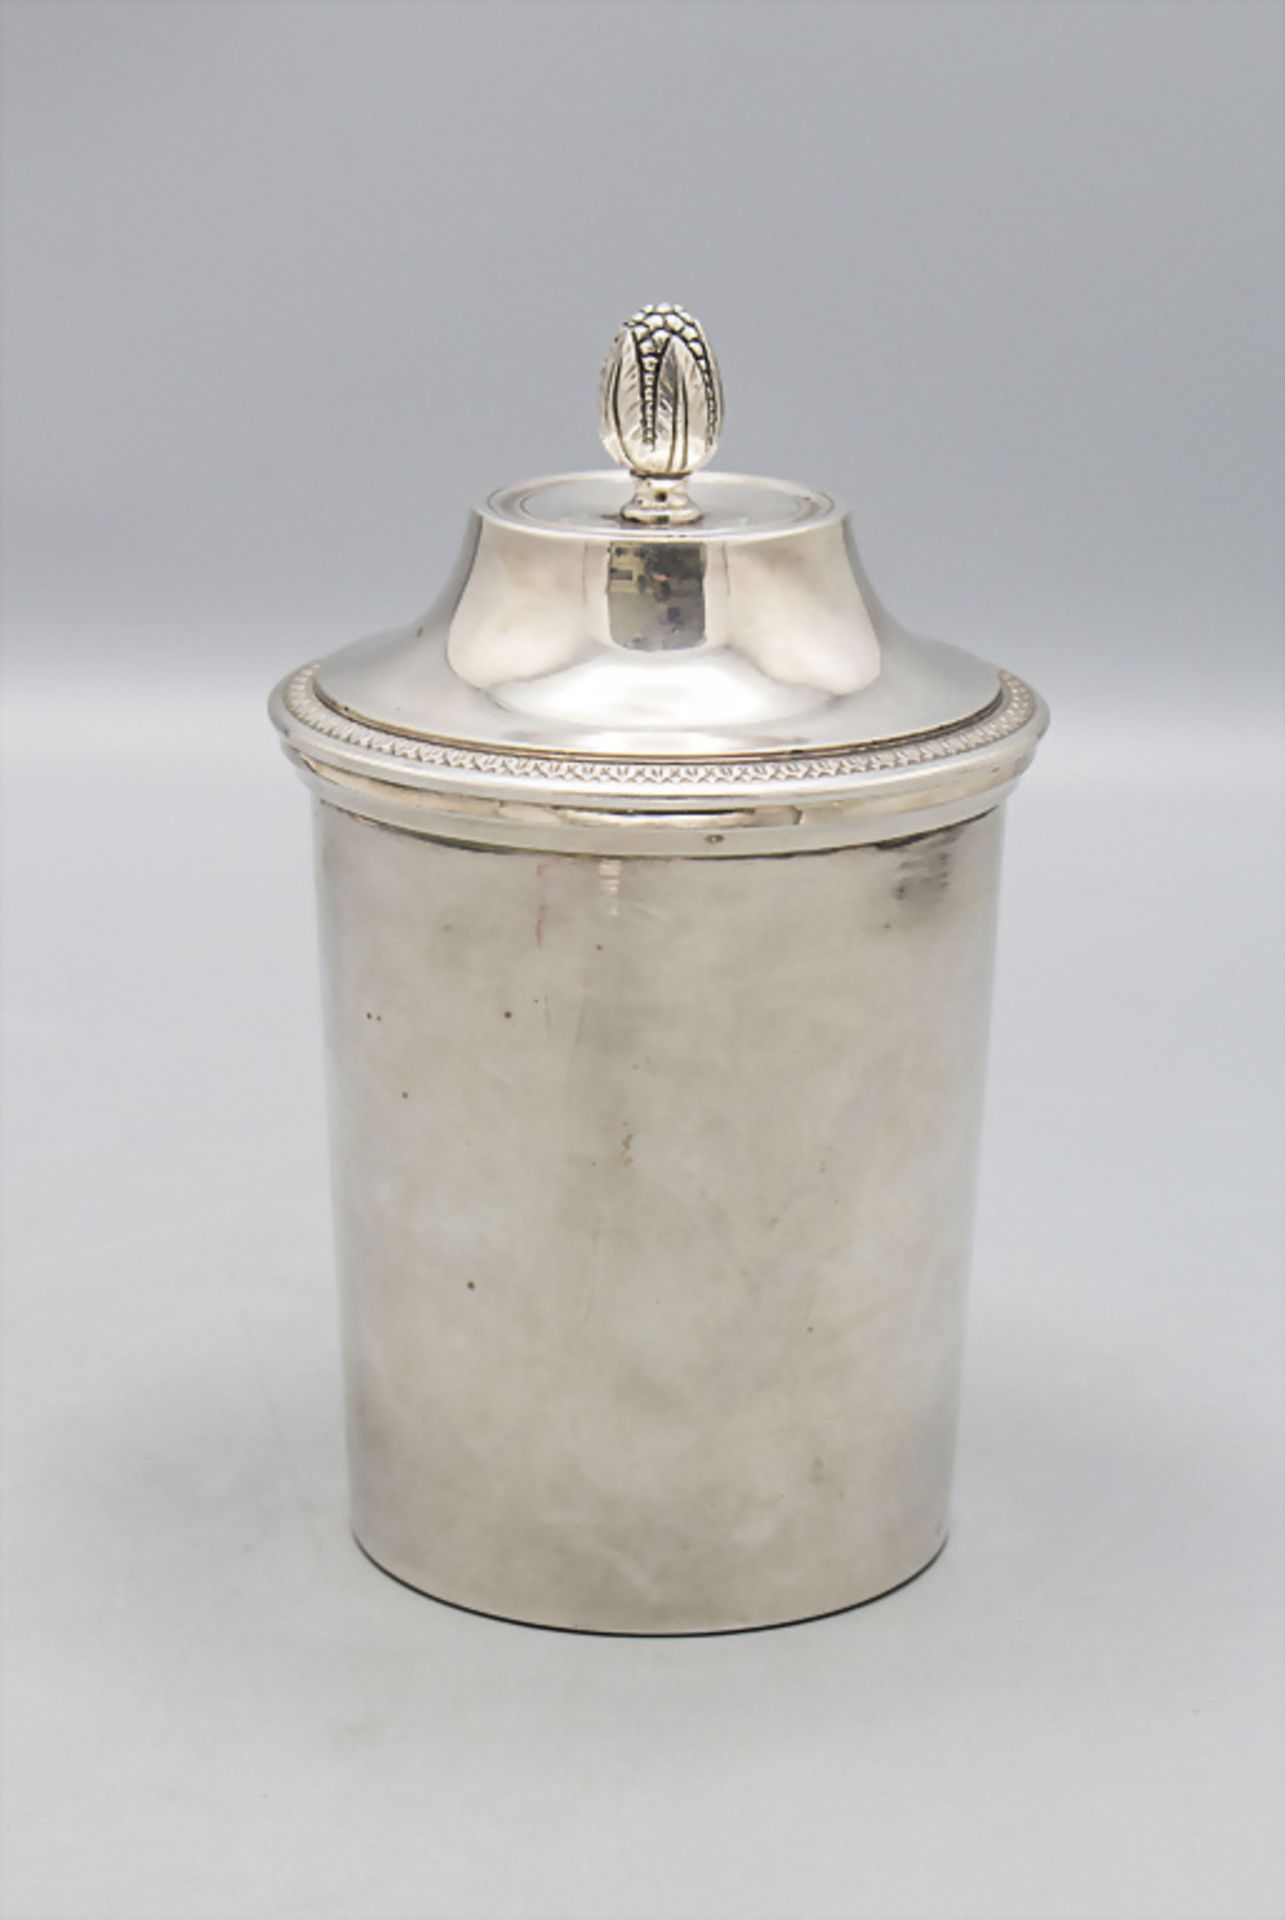 Deckelgefäß für heiße Milch / Laitière en argent massif / A silver lidded pot for hot milk ... - Bild 3 aus 8